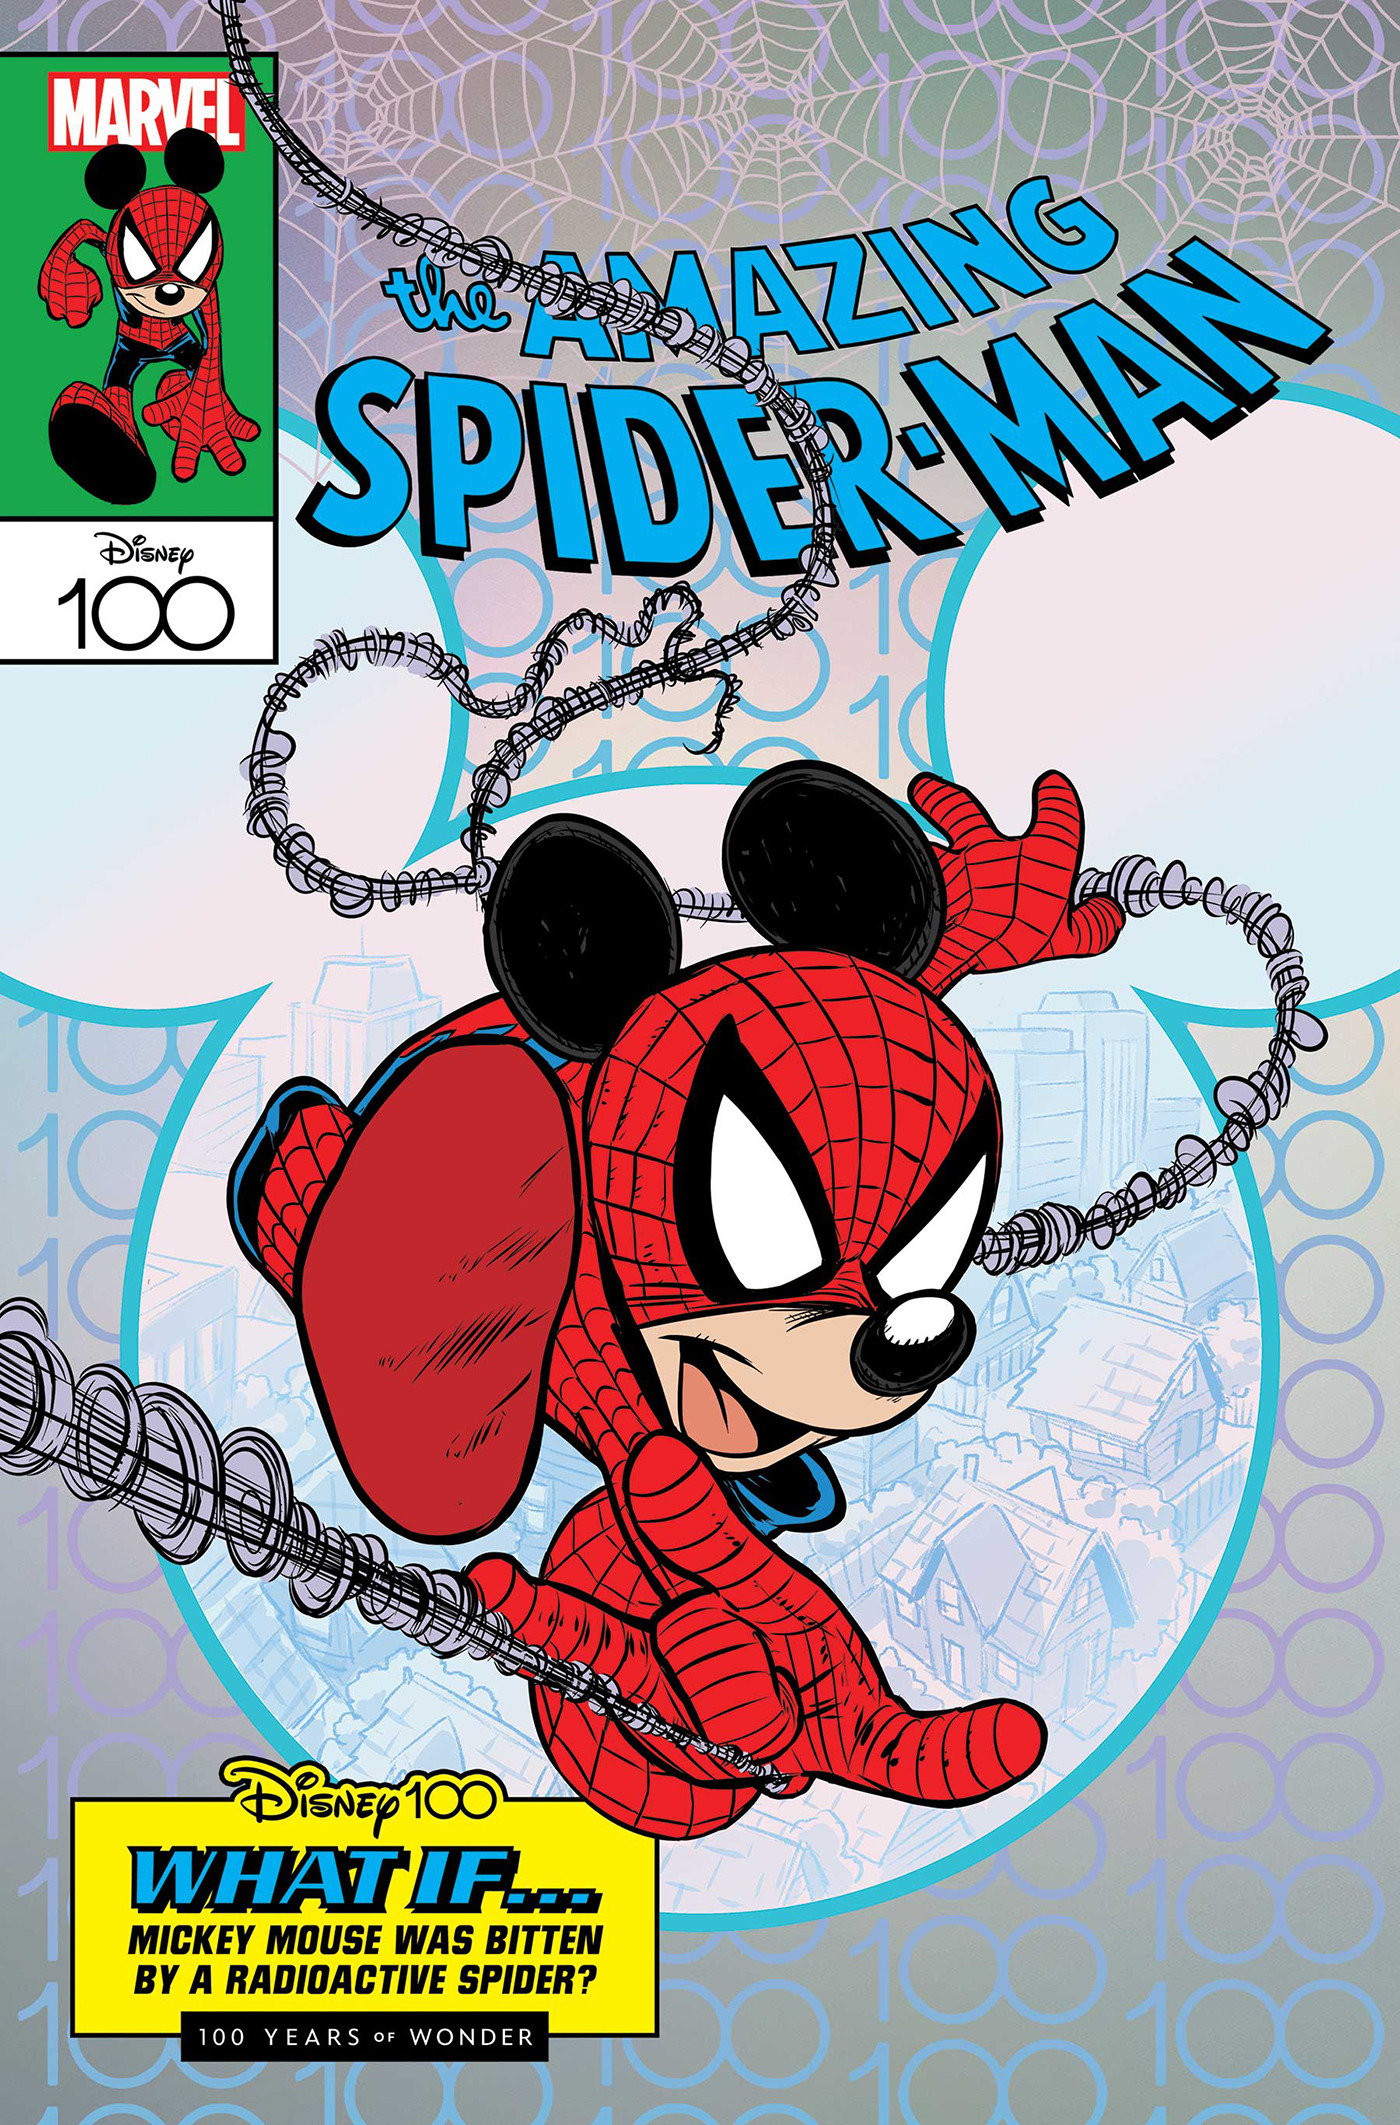 Amazing Spider-Man #35 Claudio Sciarrone Disney100 Amazing Spider-Man Variant